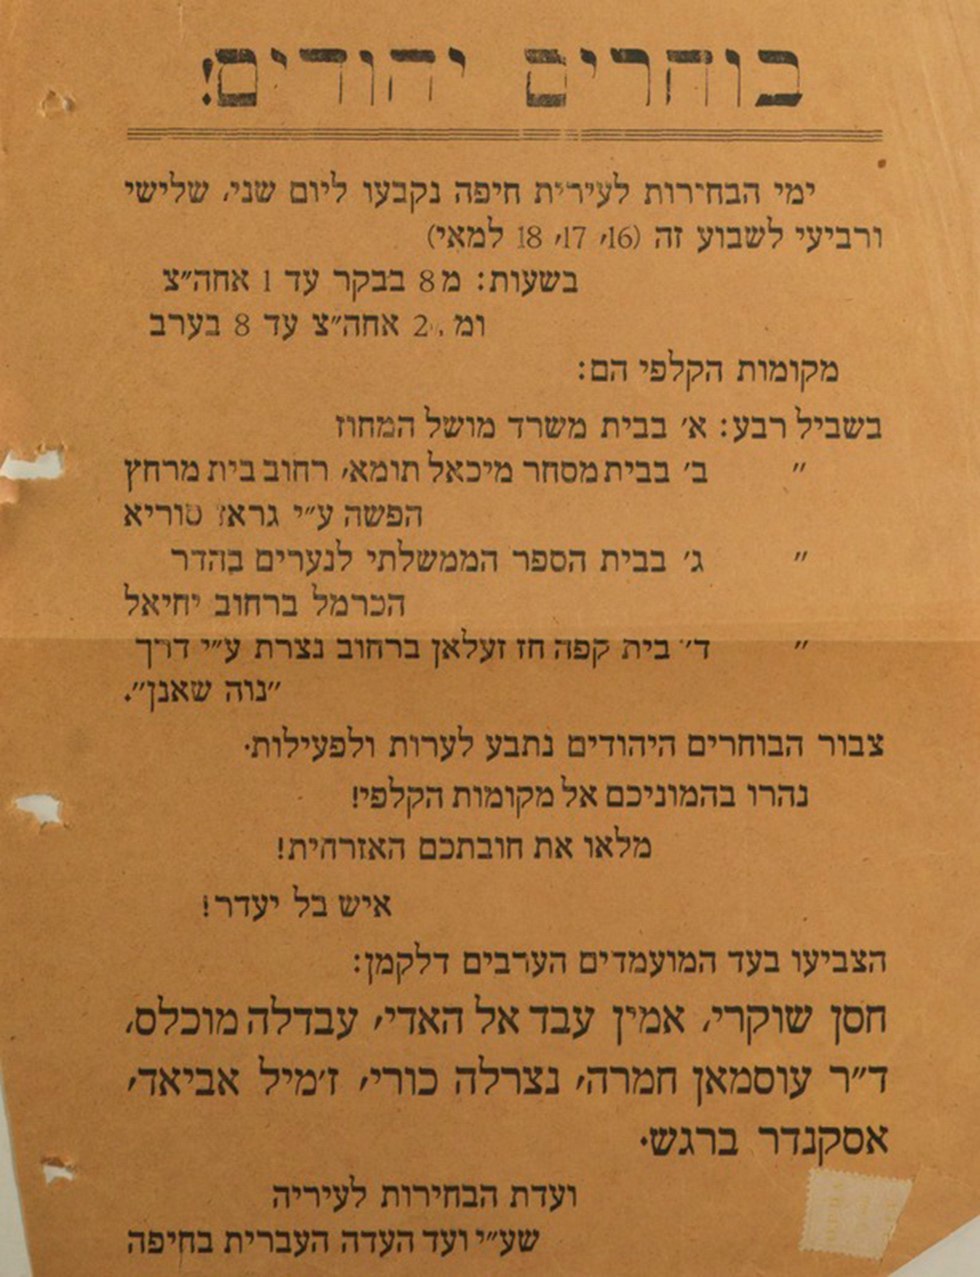 כרזה היהודים נוהרים לקלפיות (באדיבות הספריה הלאומית)